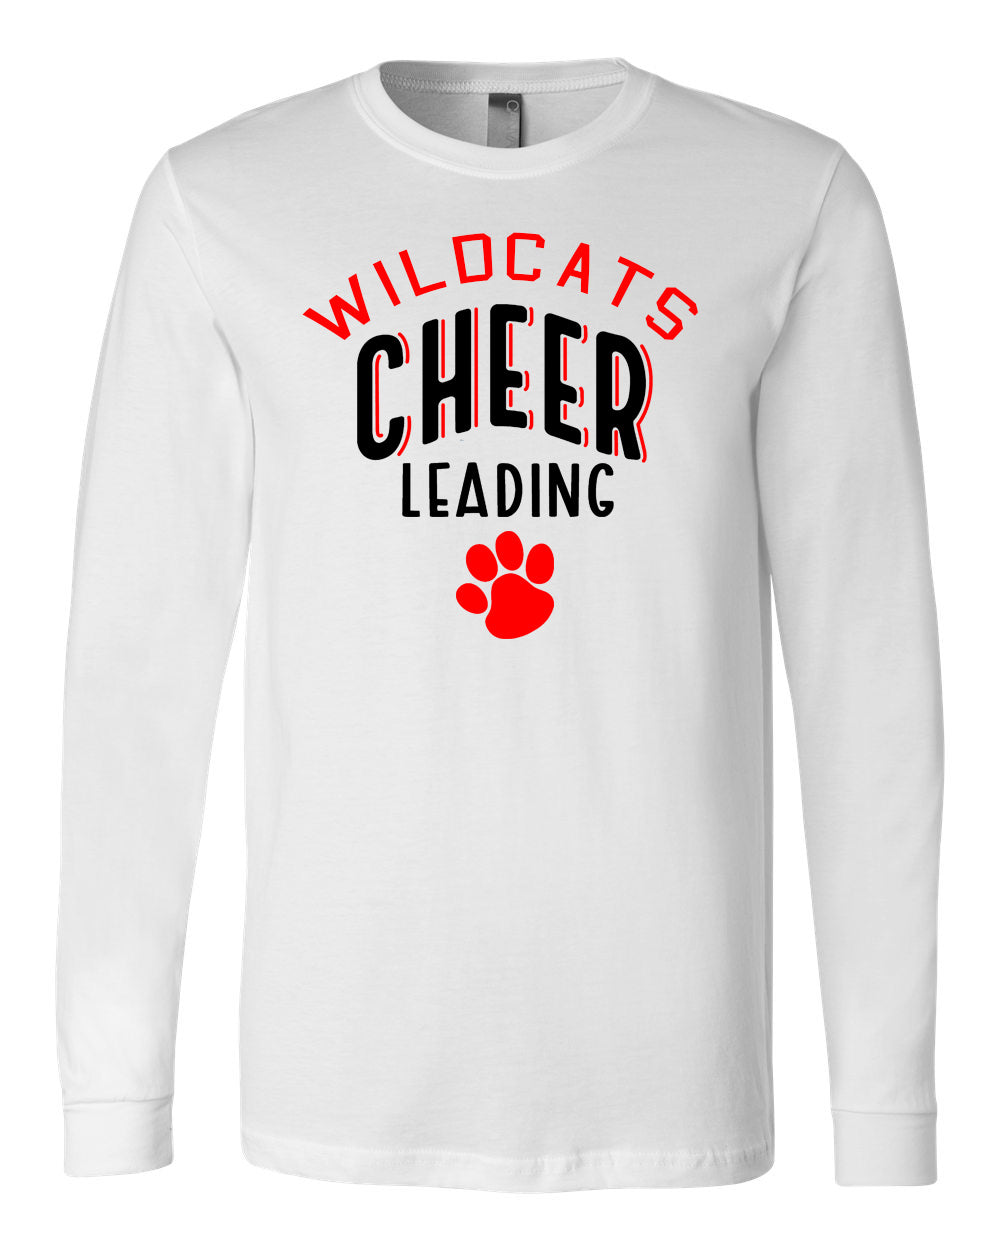 Wildcats Cheer Design 5 Long Sleeve Shirt